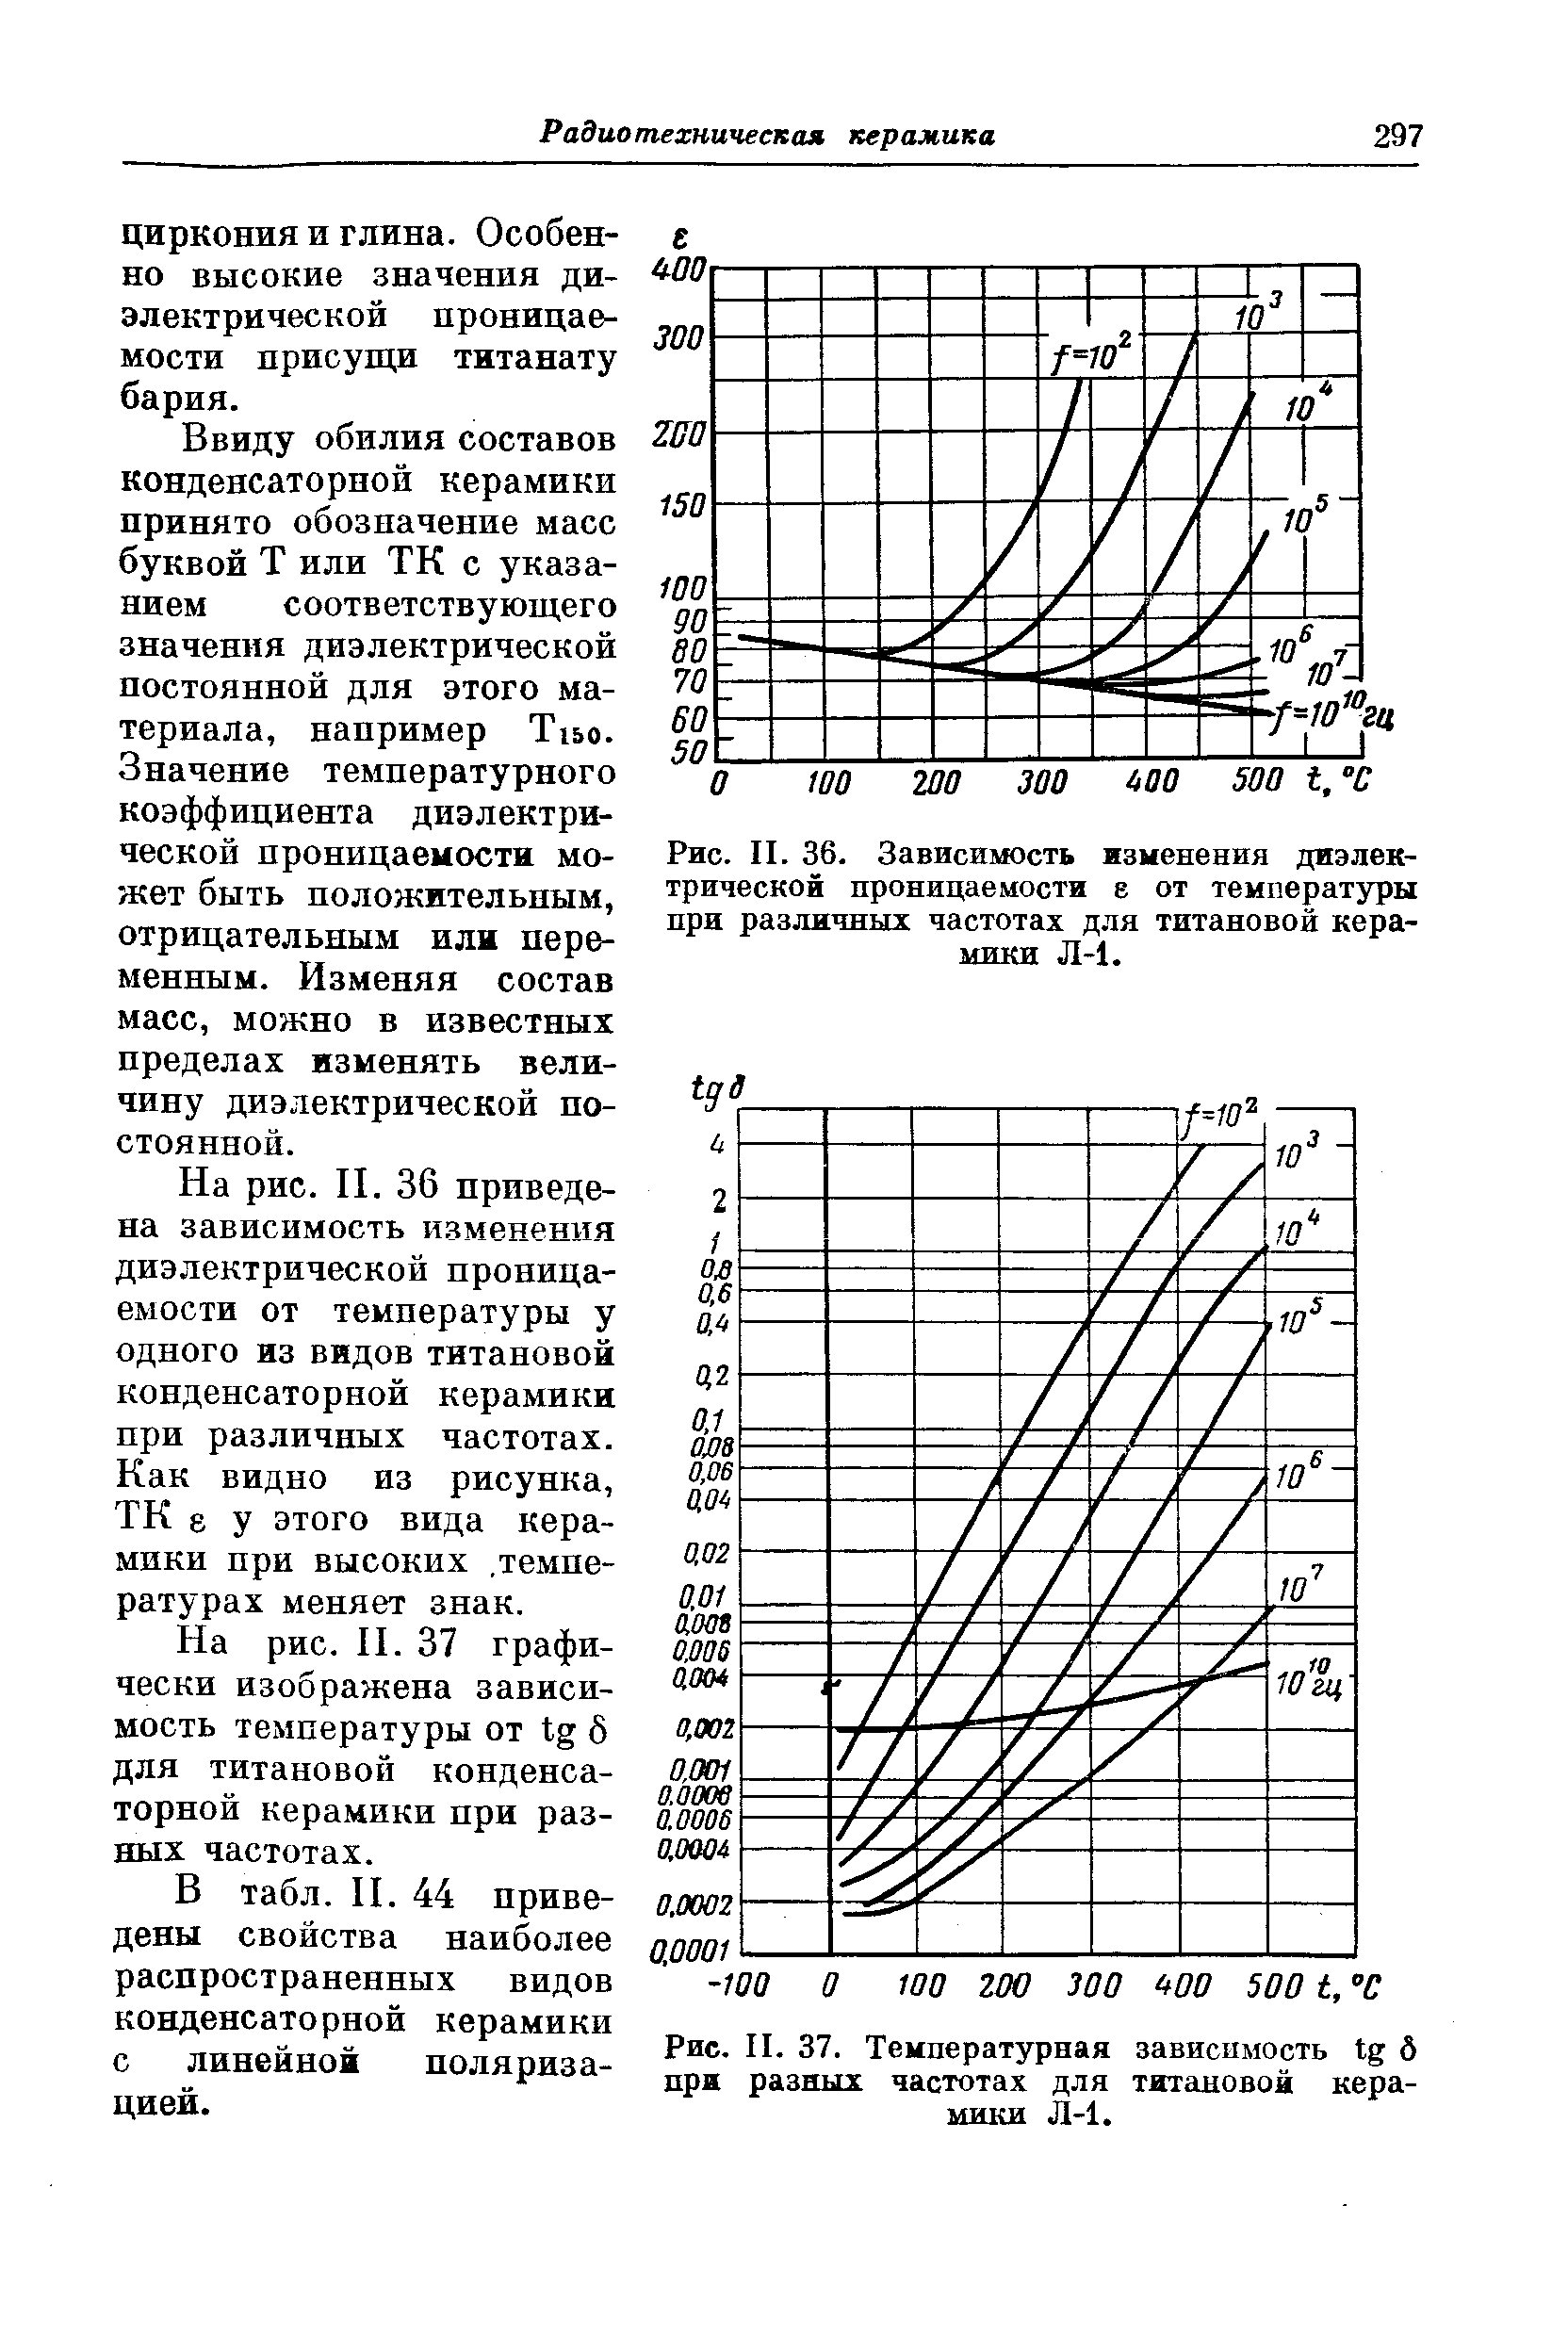 Рис. II. 37. <a href="/info/191882">Температурная зависимость</a> б при разных частотах для титановой керамики Л-1.
